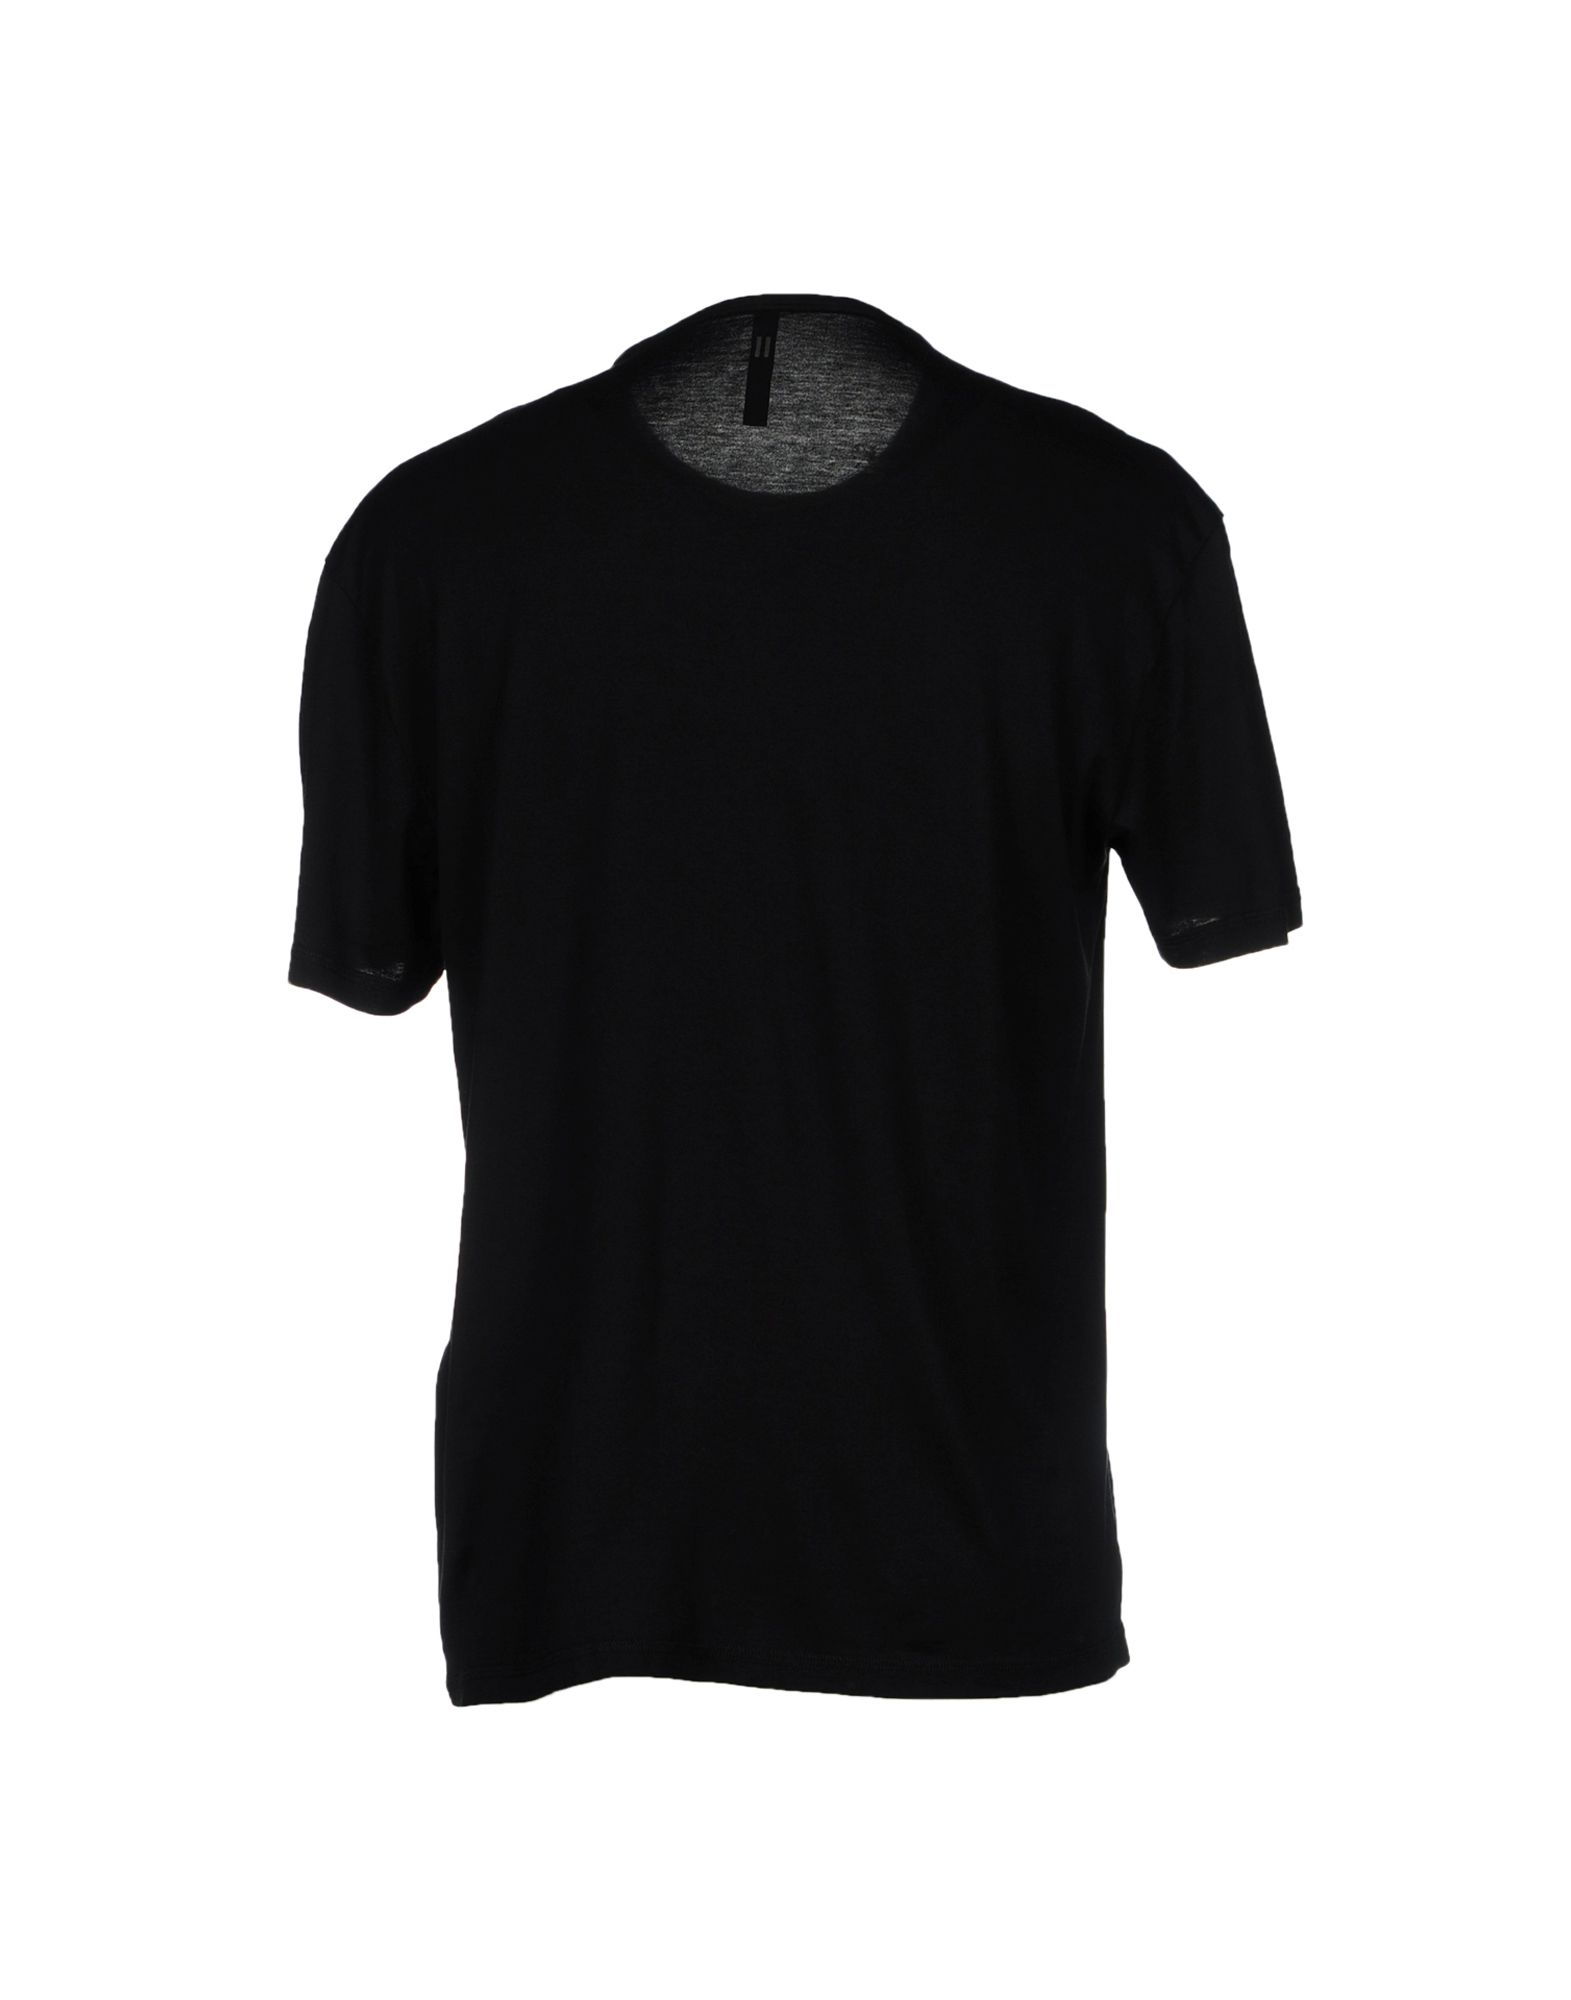 Neil Barrett T-Shirt in Black for Men - Lyst